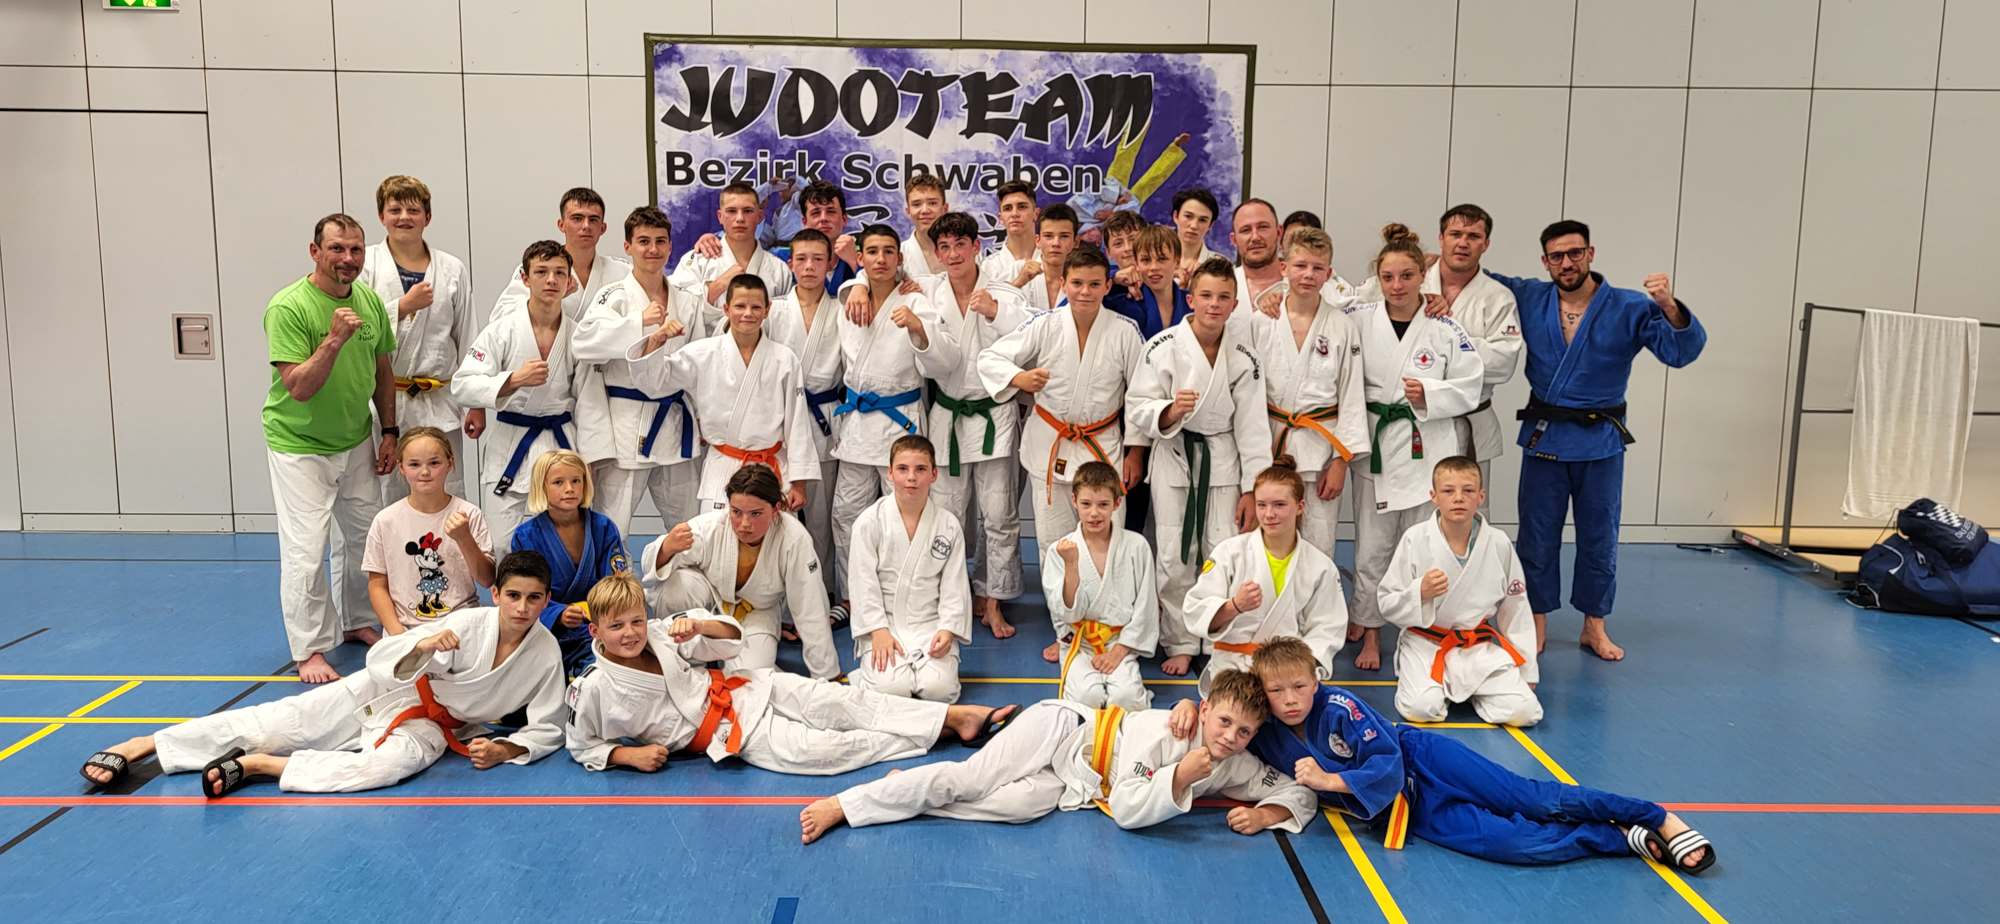 Judo-Jugend aus Judo-Schwaben trifft sich zum Wochenendlehrgang in Memmingen 2022